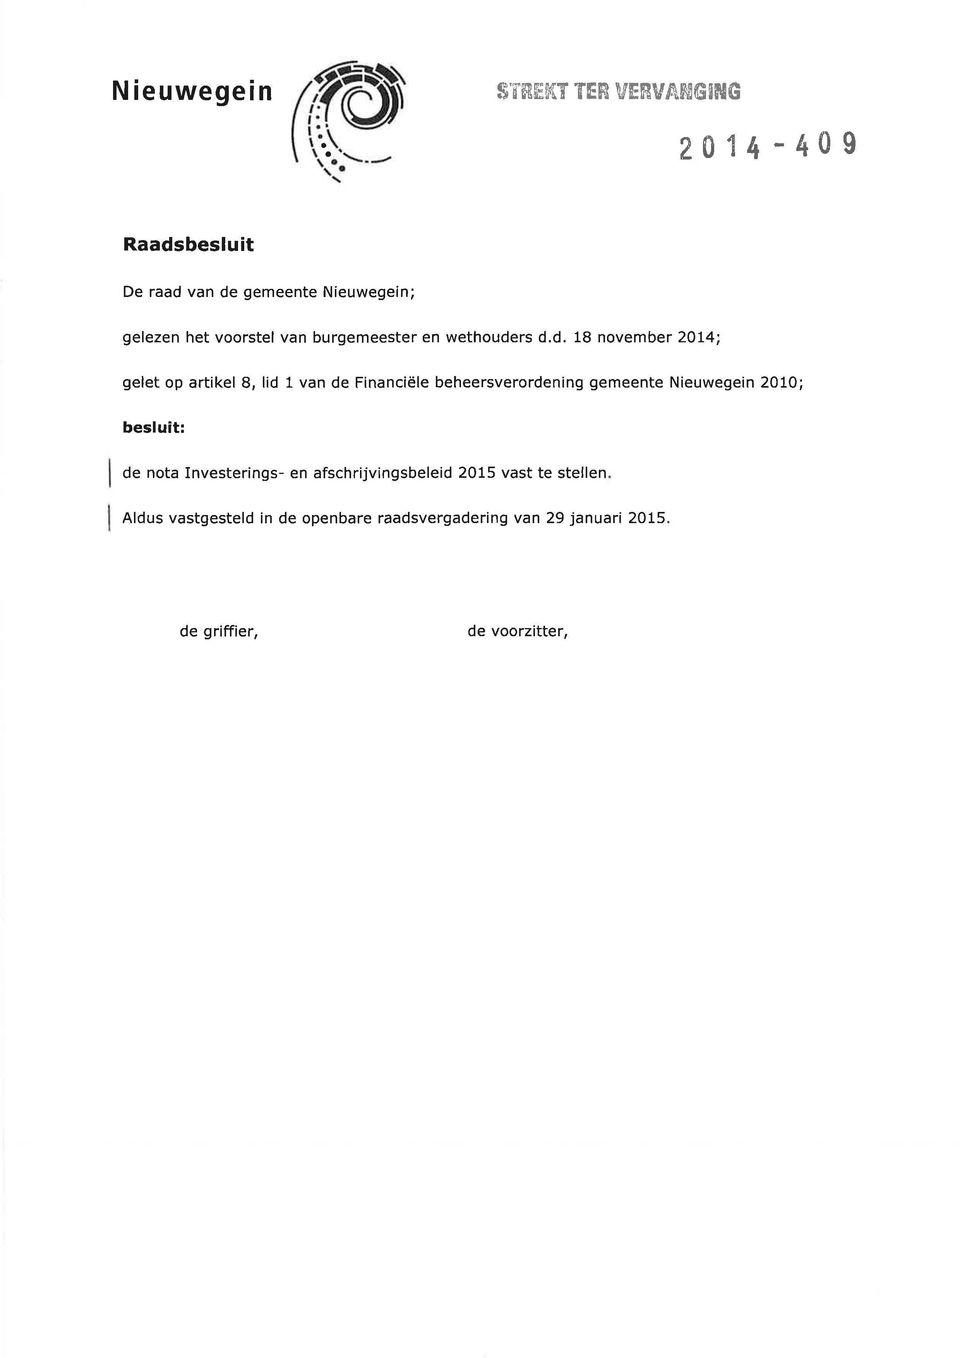 rs d.d. 18 november 2014; gelet op artikel 8, lid 1 van de Financiële beheersverordening gemeente Nieuwegein